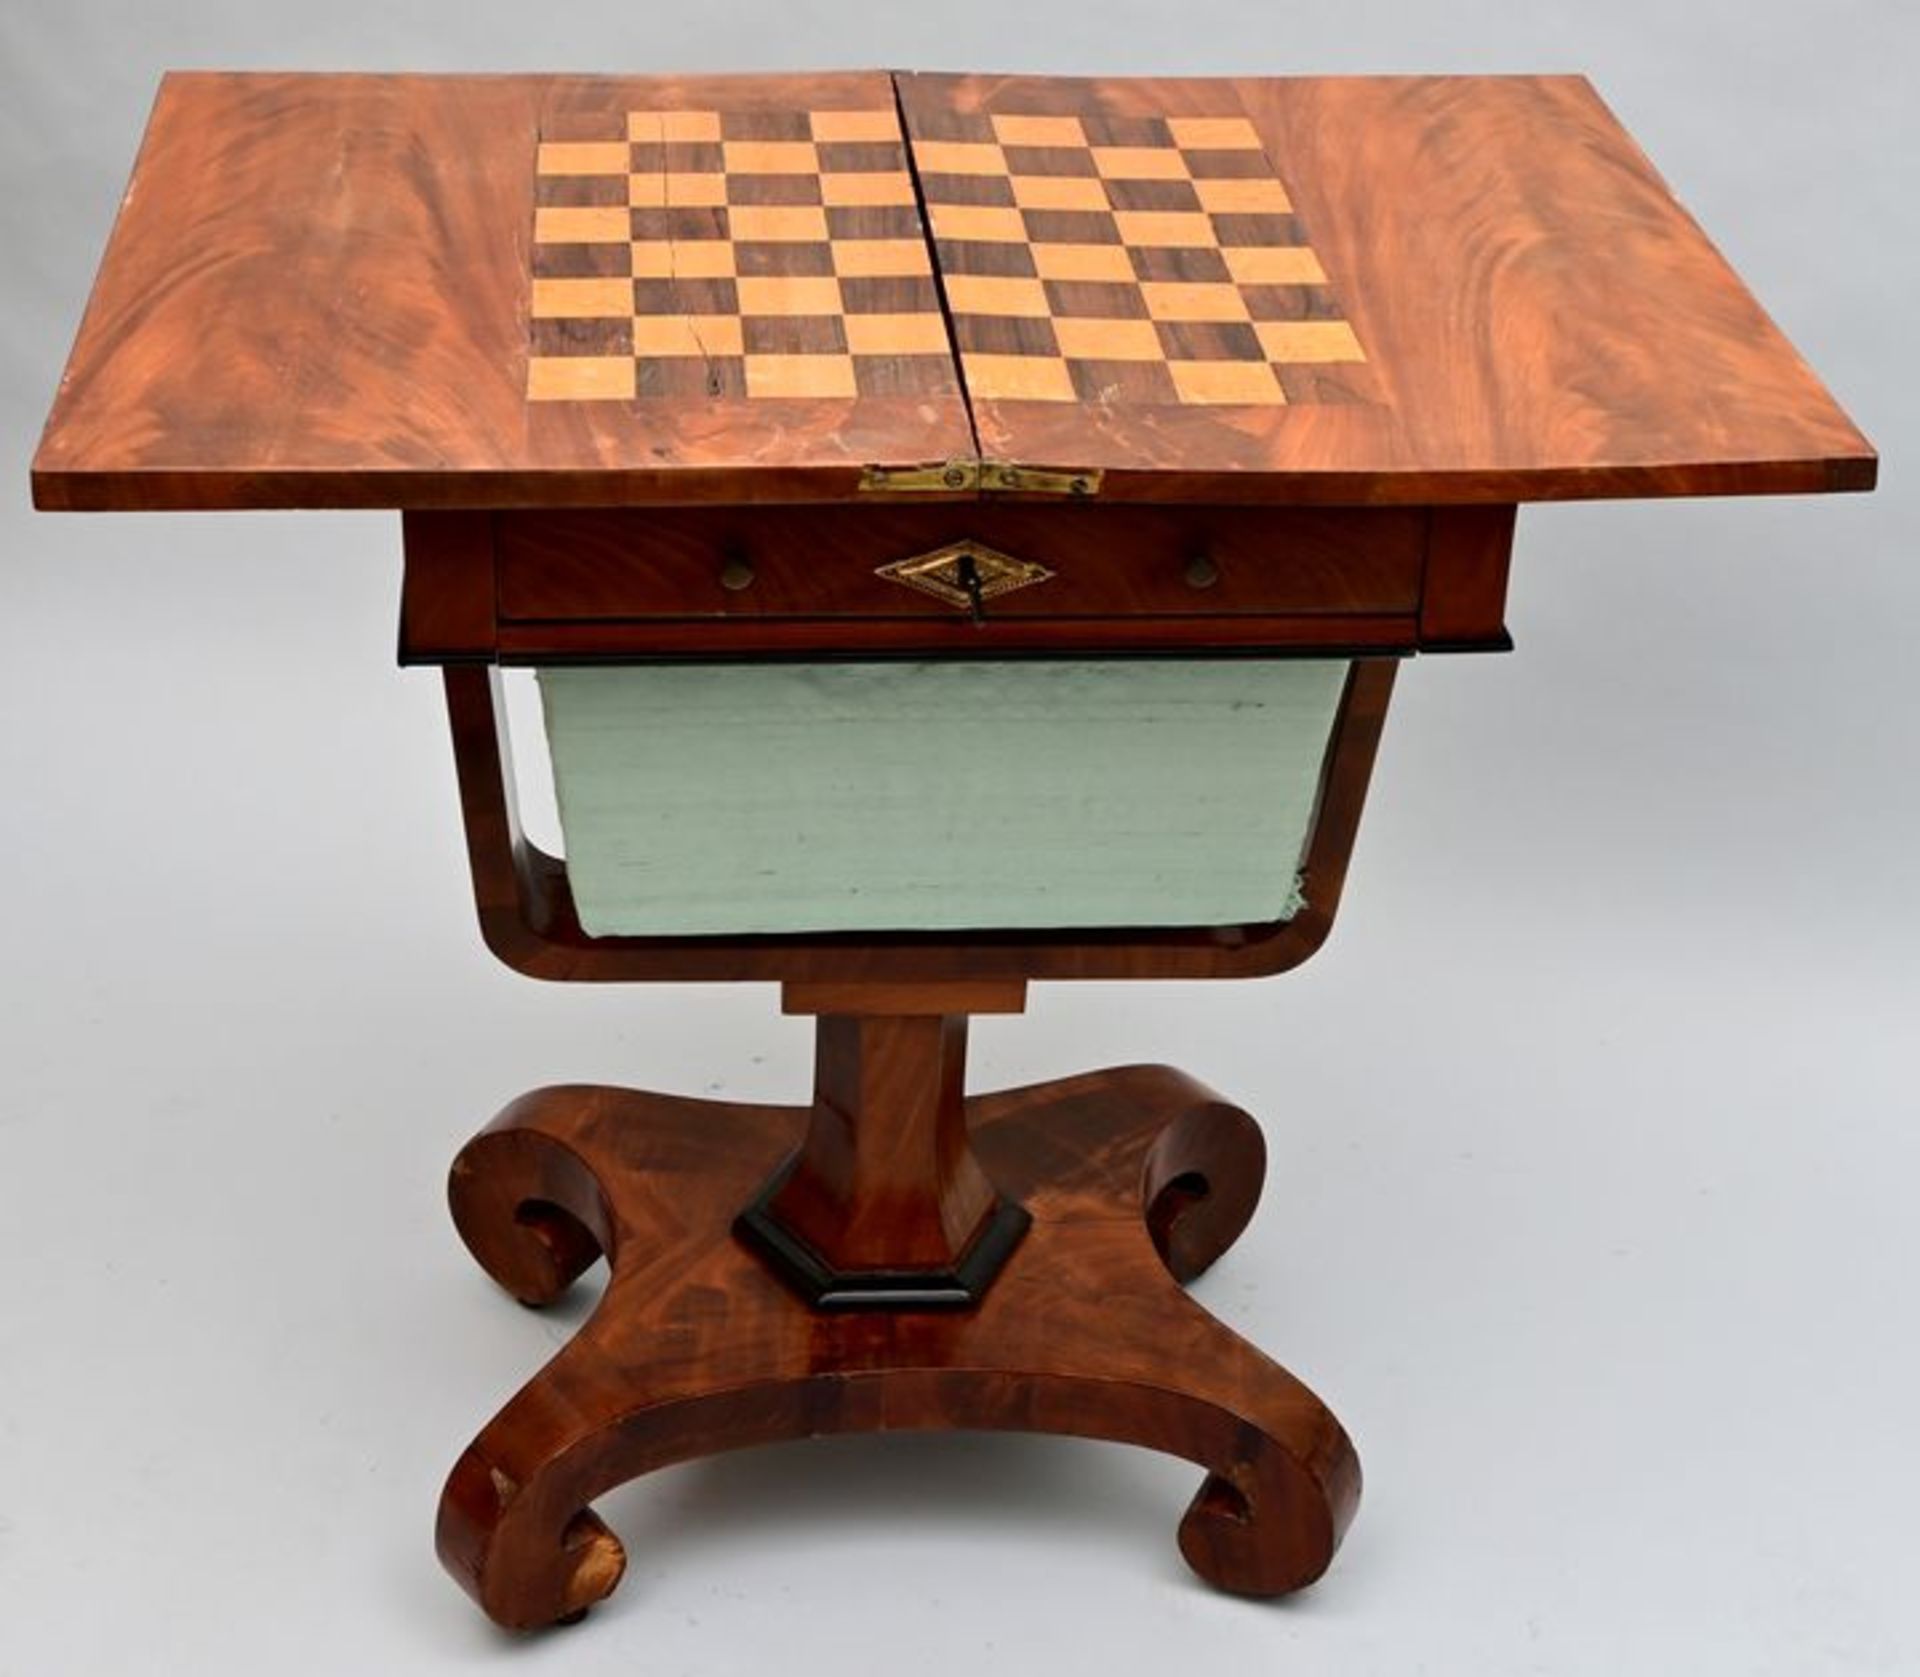 Kleiner Spieltisch / Small game table - Image 3 of 3